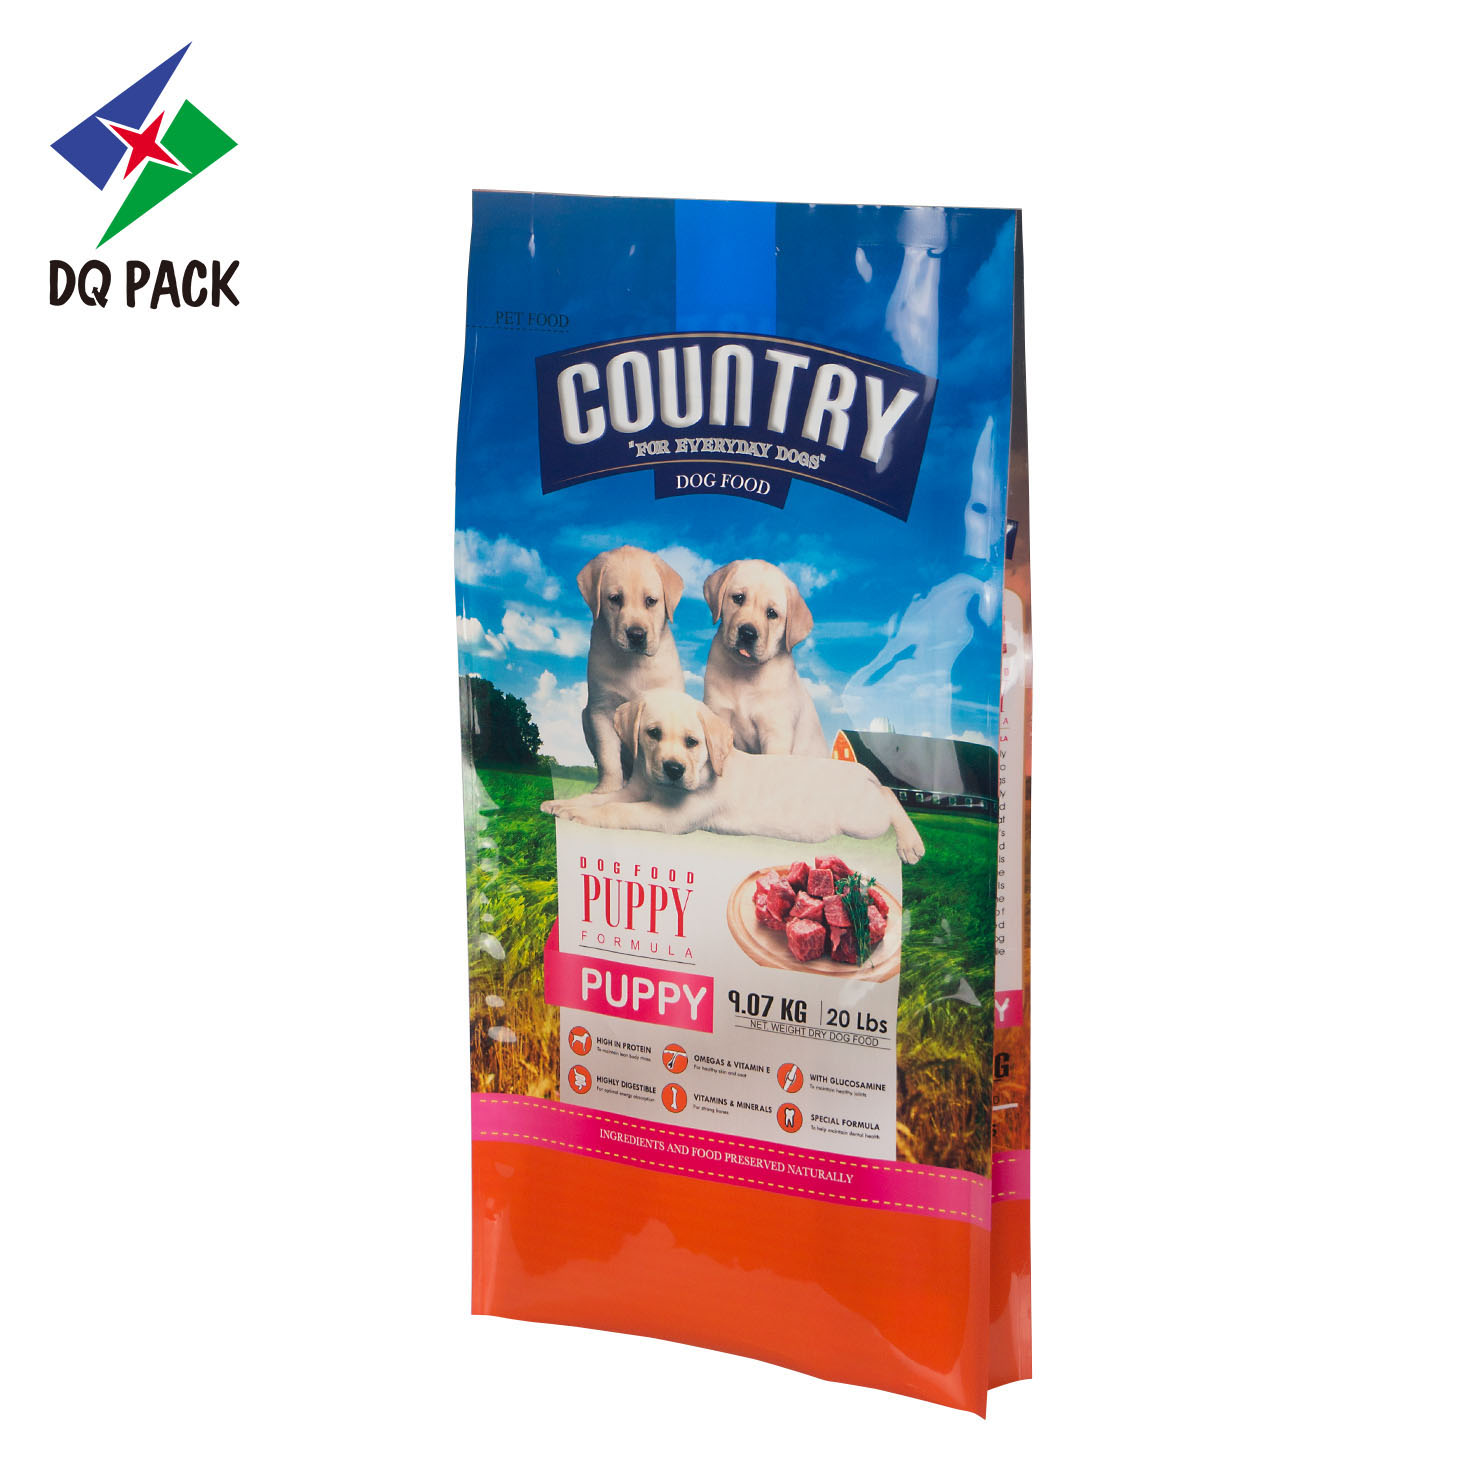 Paquete DQ, bolsa de plástico con fuelle lateral de alta calidad, bolsa de alimentos para mascotas con impresión colorida, bolsa de polietileno con sellado térmico de capacidad personalizada